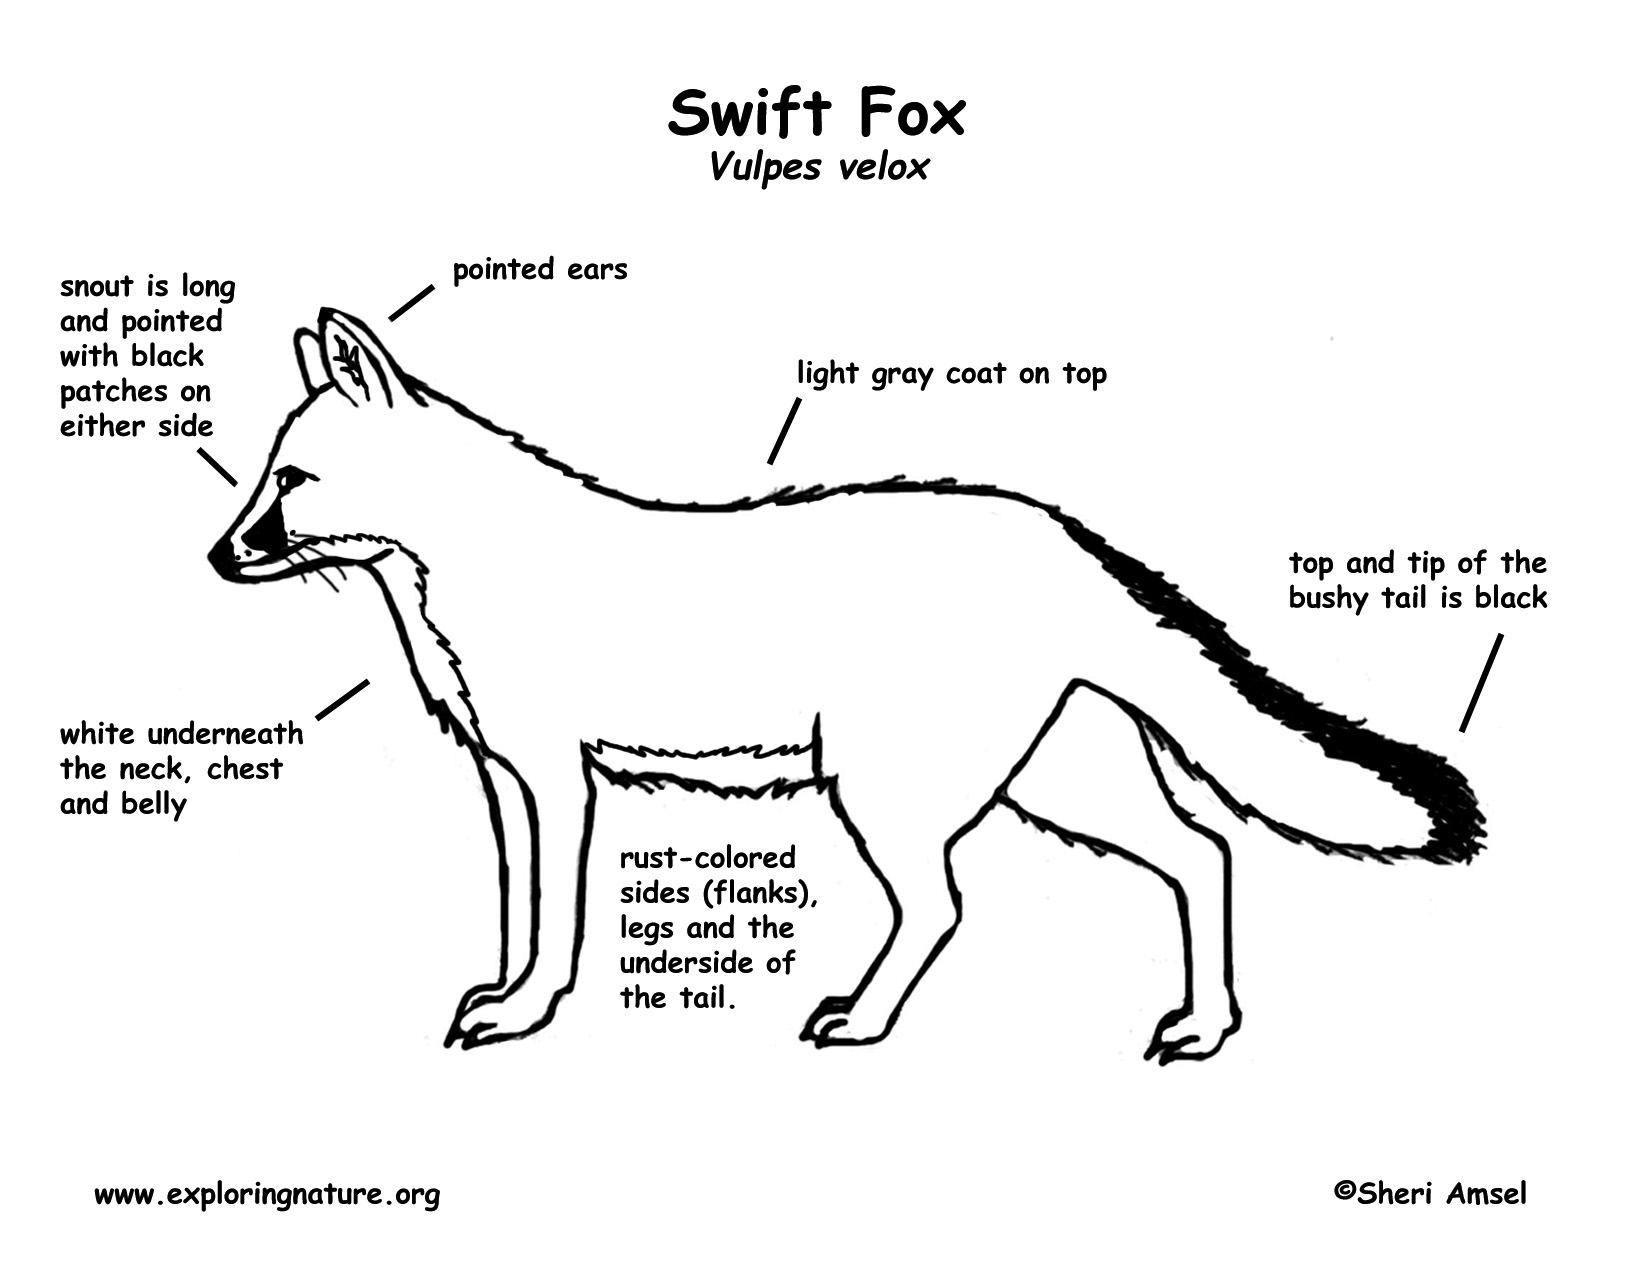 fennec fox diagram